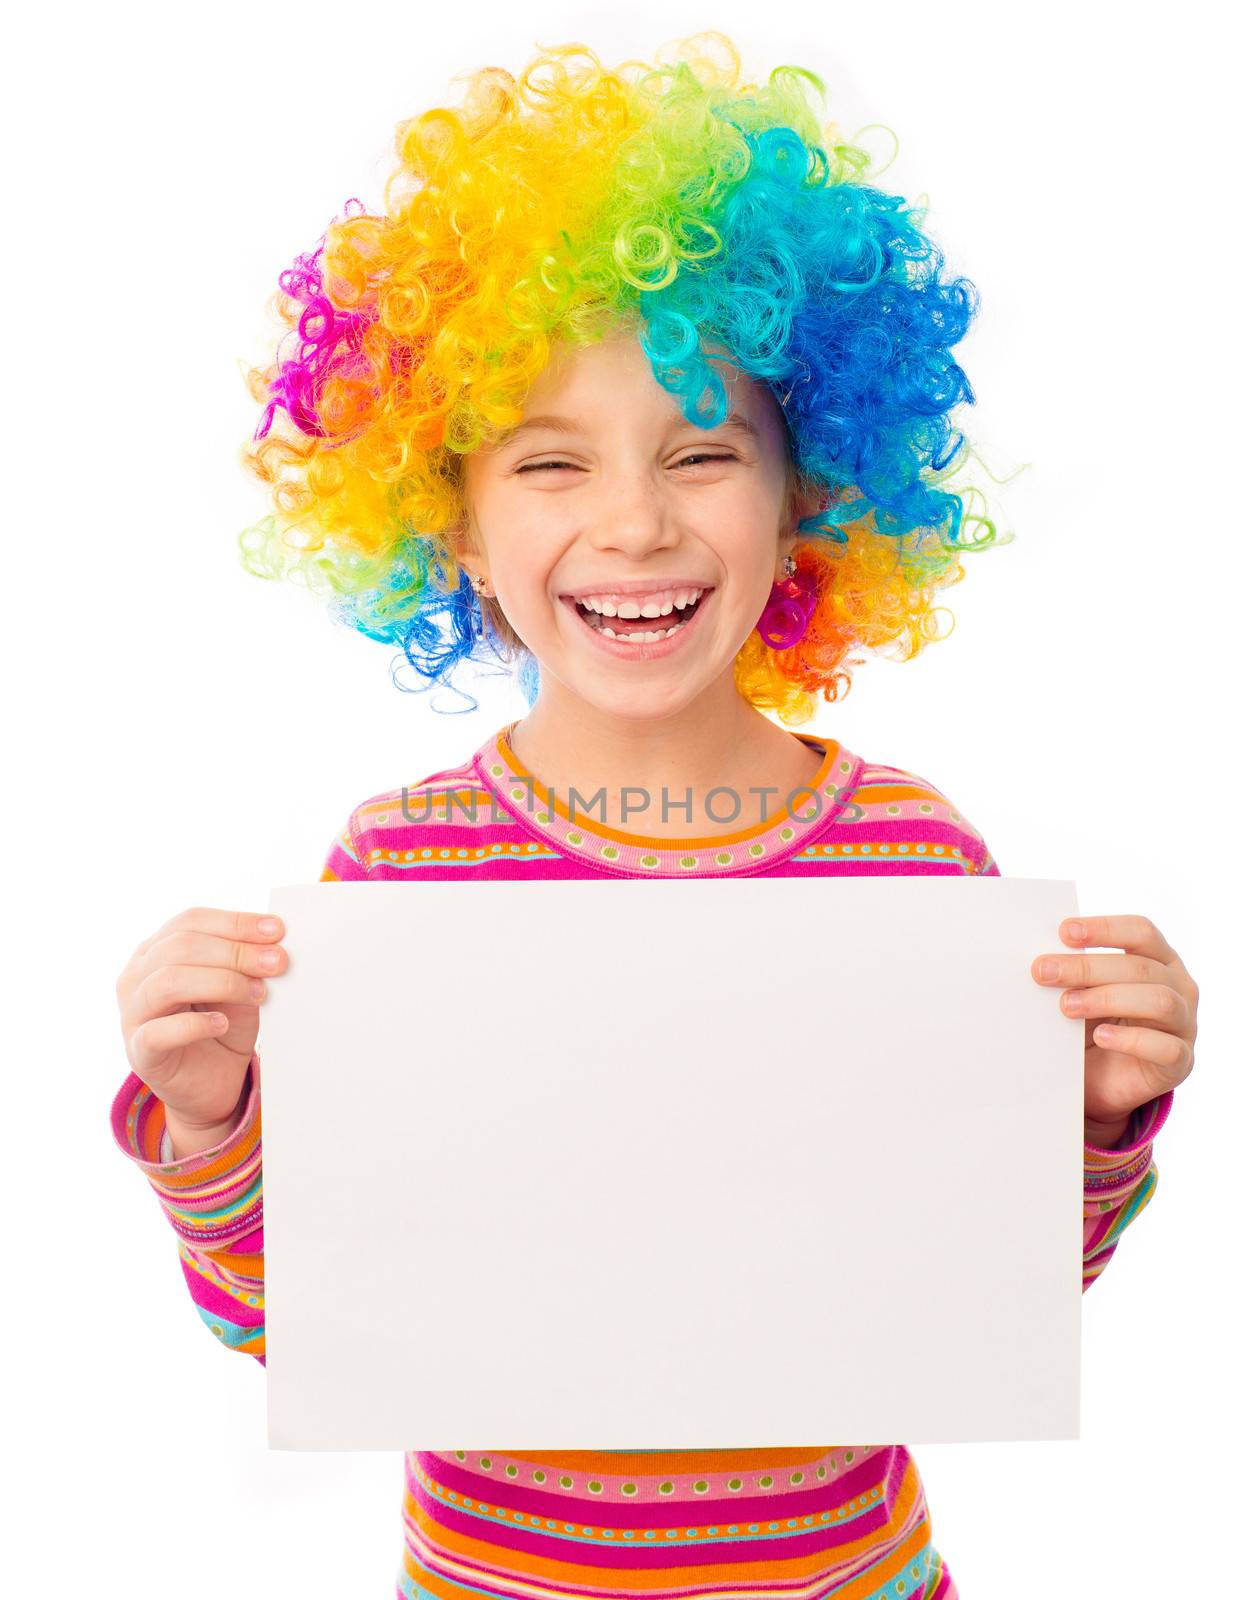 little girl in clown wig by GekaSkr